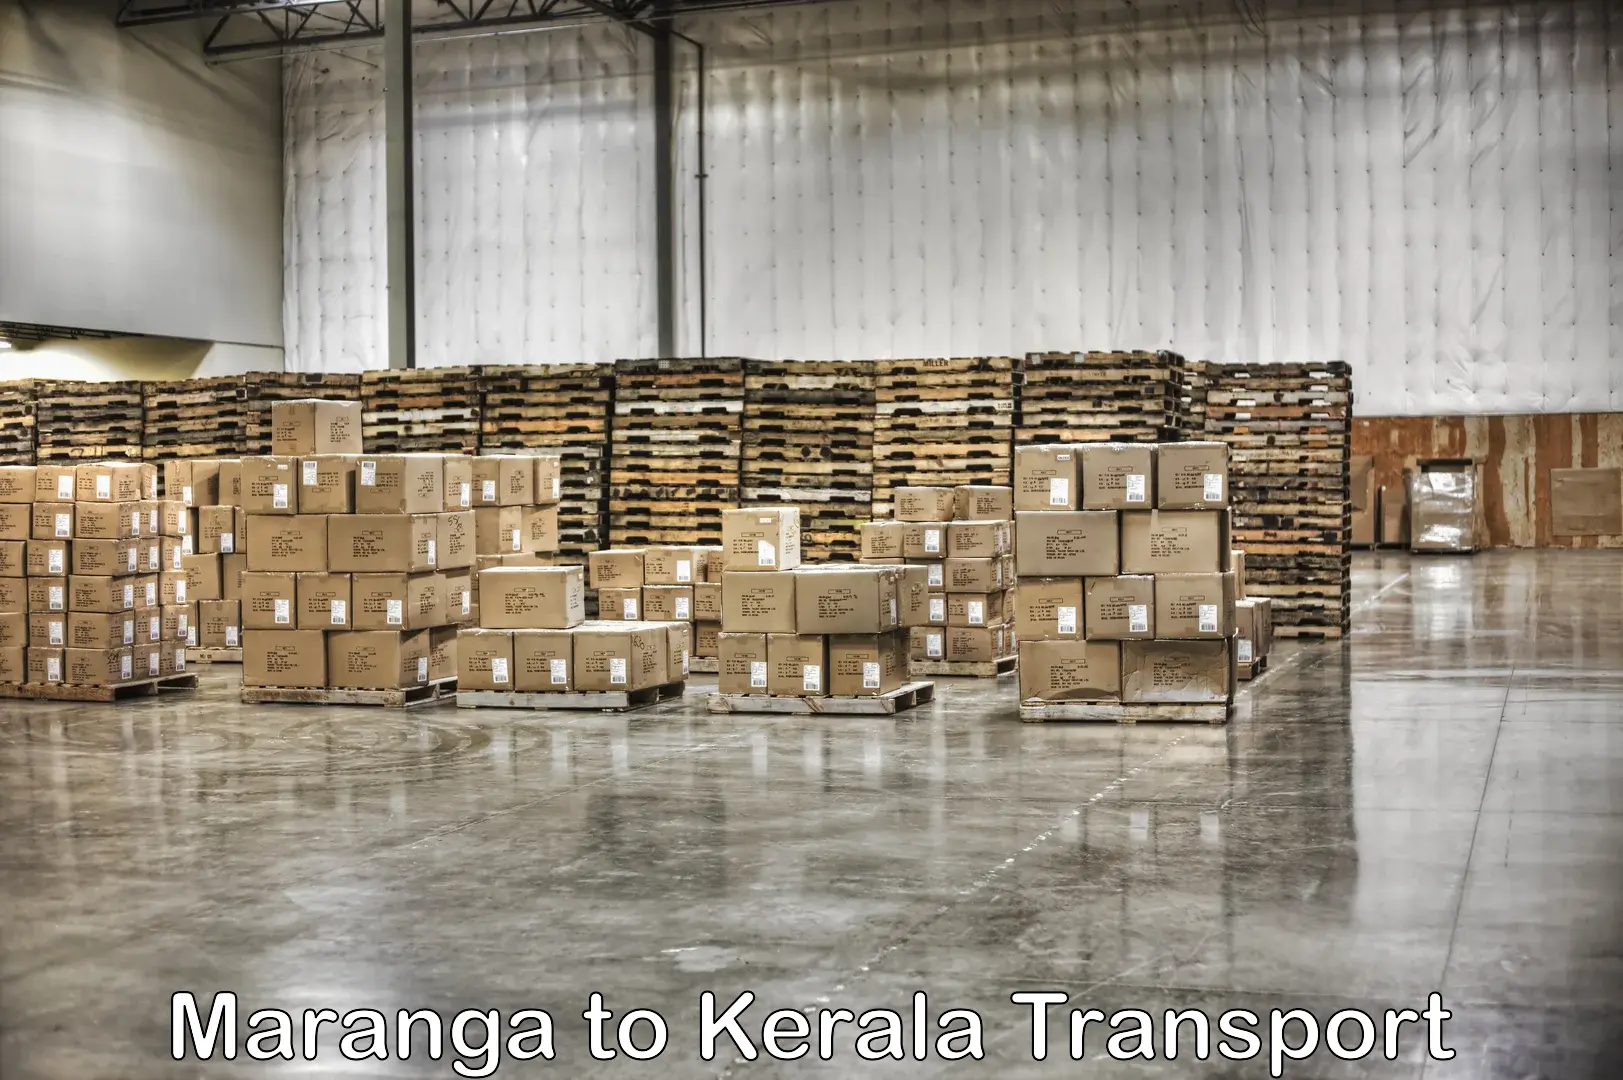 Air freight transport services Maranga to Kanhangad